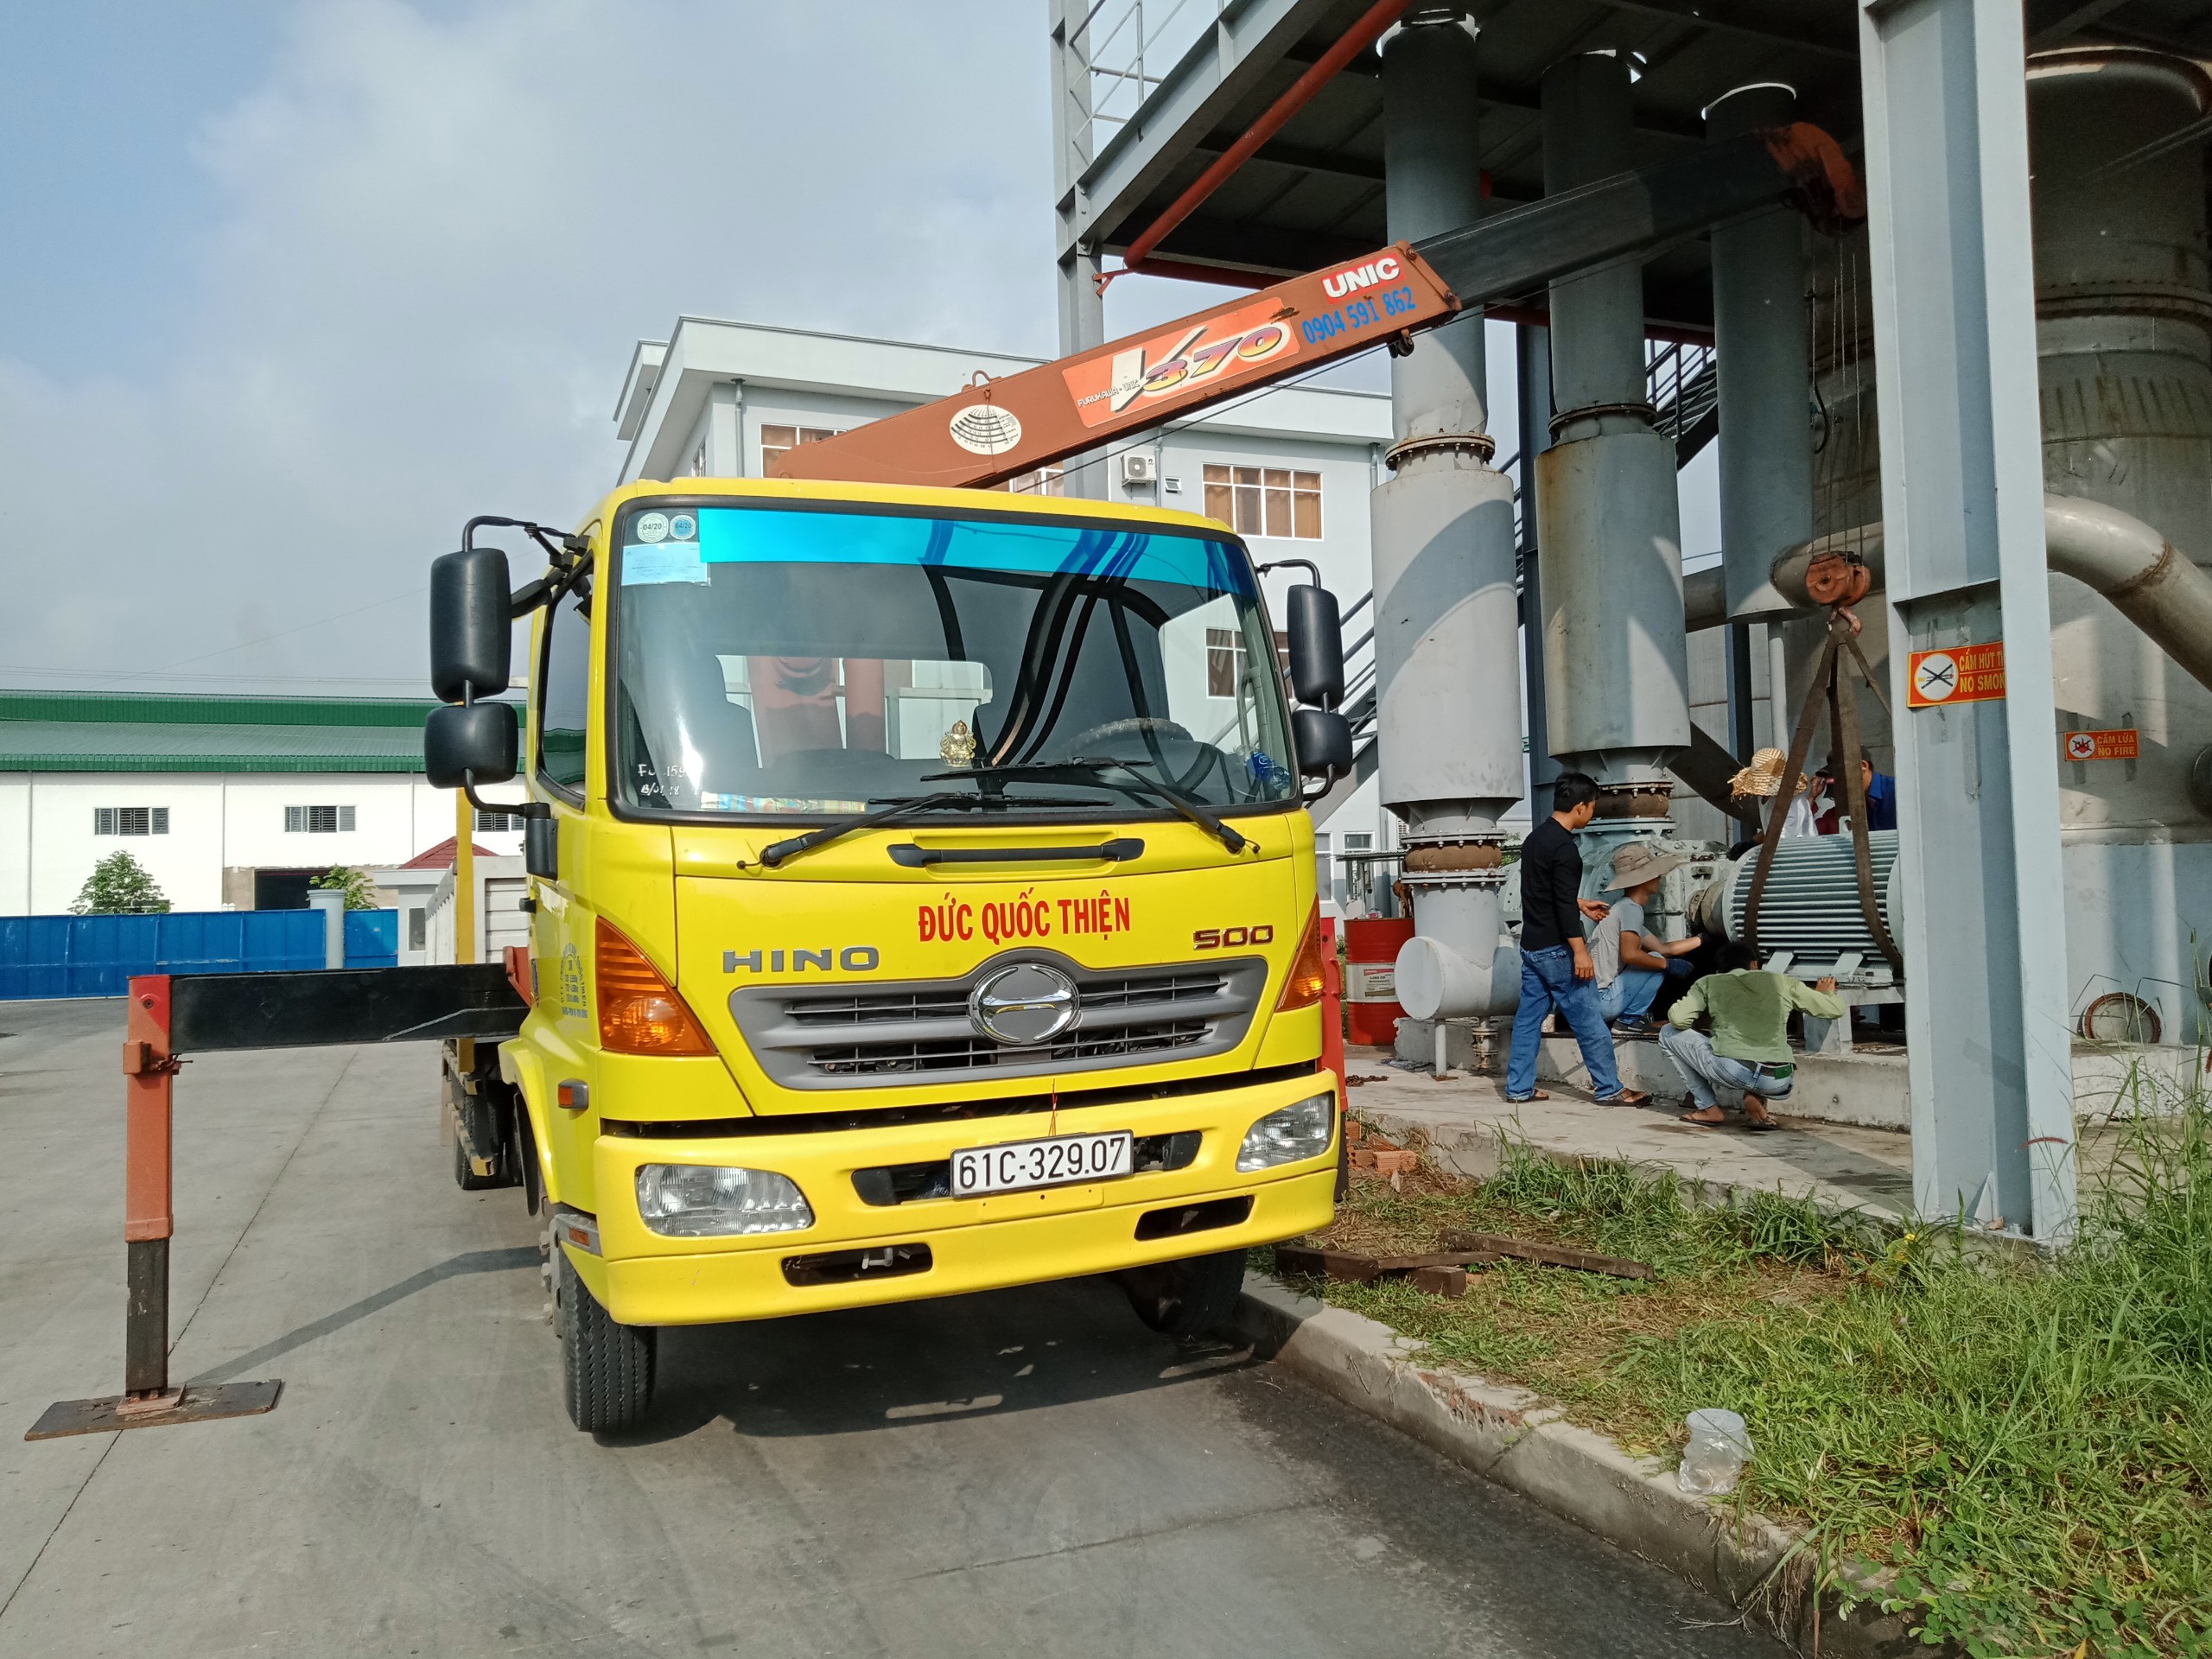 Dịch vụ cho thuê xe cẩu thùng giá rẻ nhất ở Đồng Nai